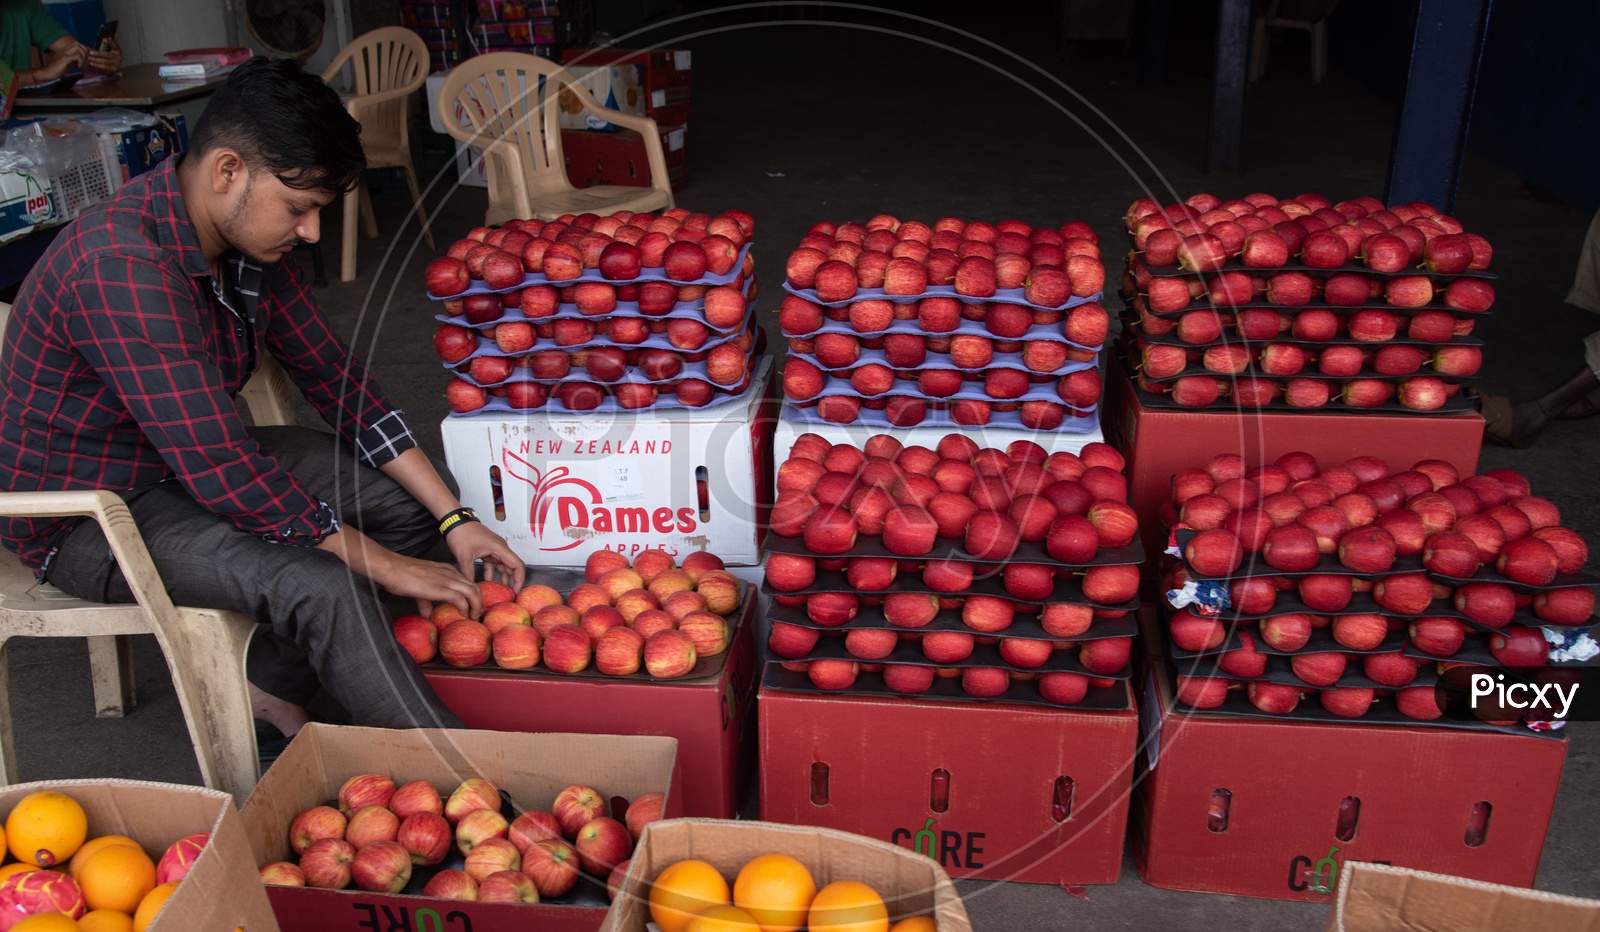 Vendor sorting Apples